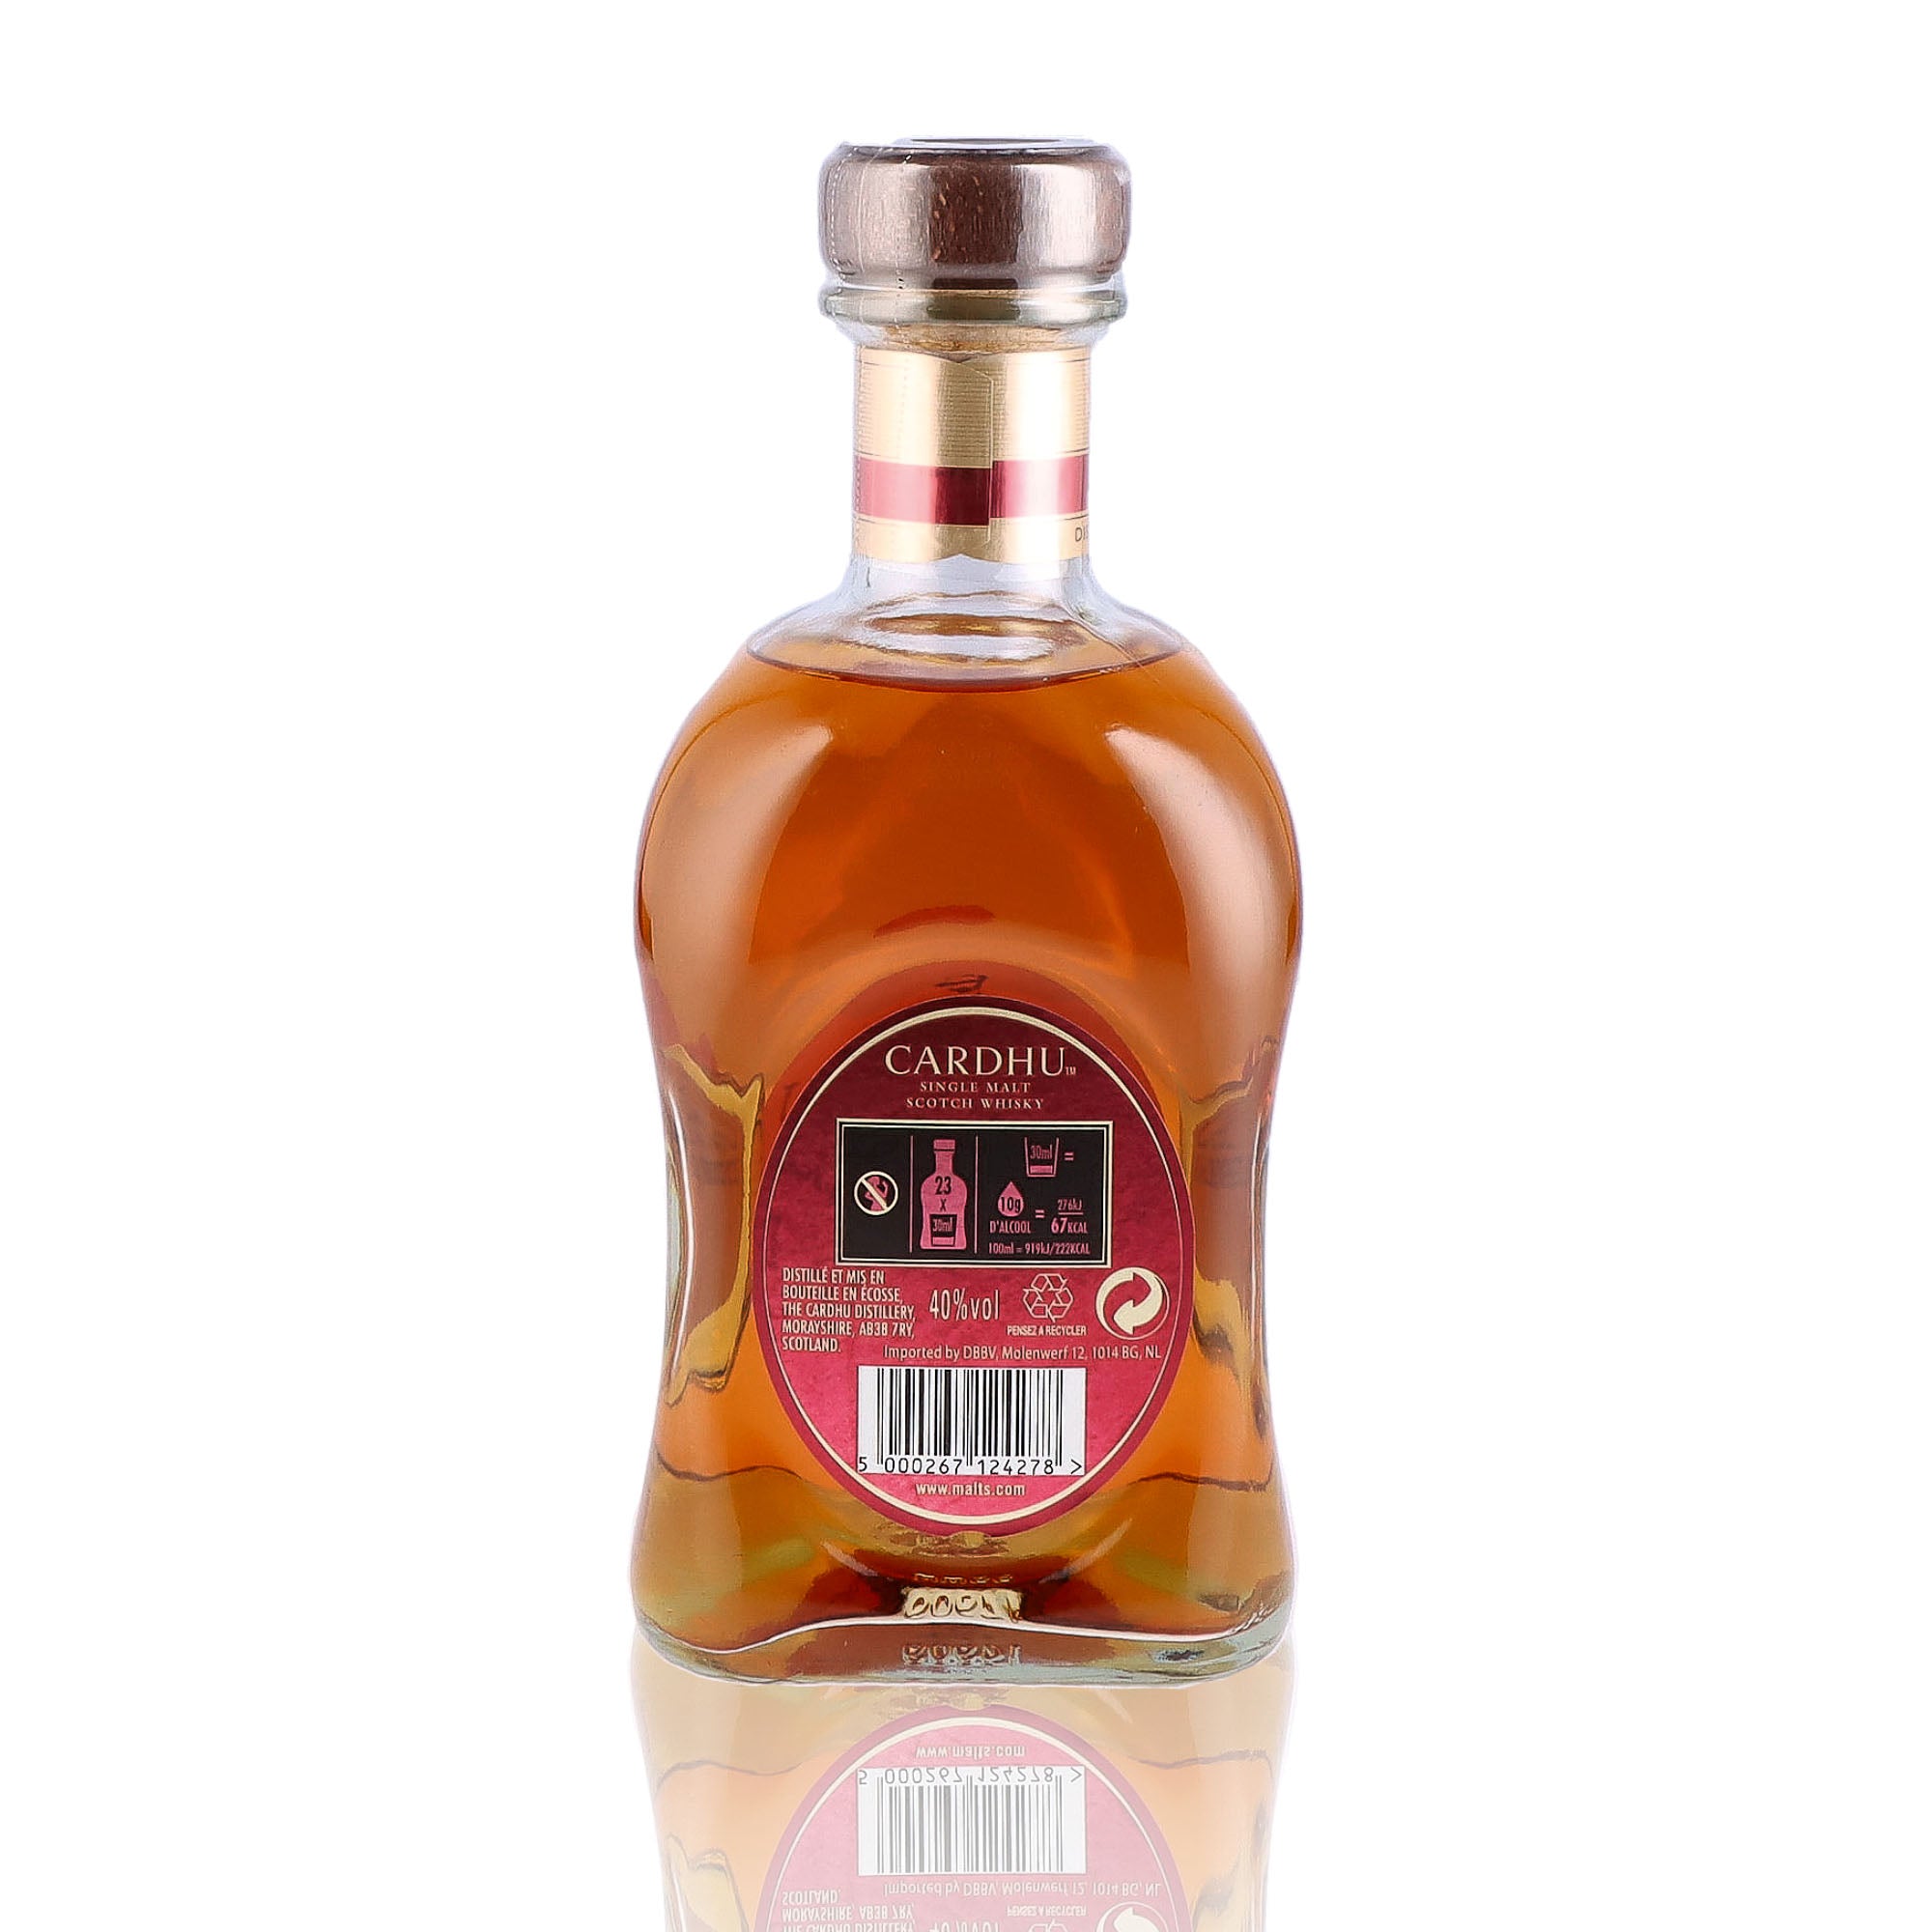 Un coffret de Scotch Whisky Single Malt de la marque Cardhu, nommée Amber Rock et 2 Verres.